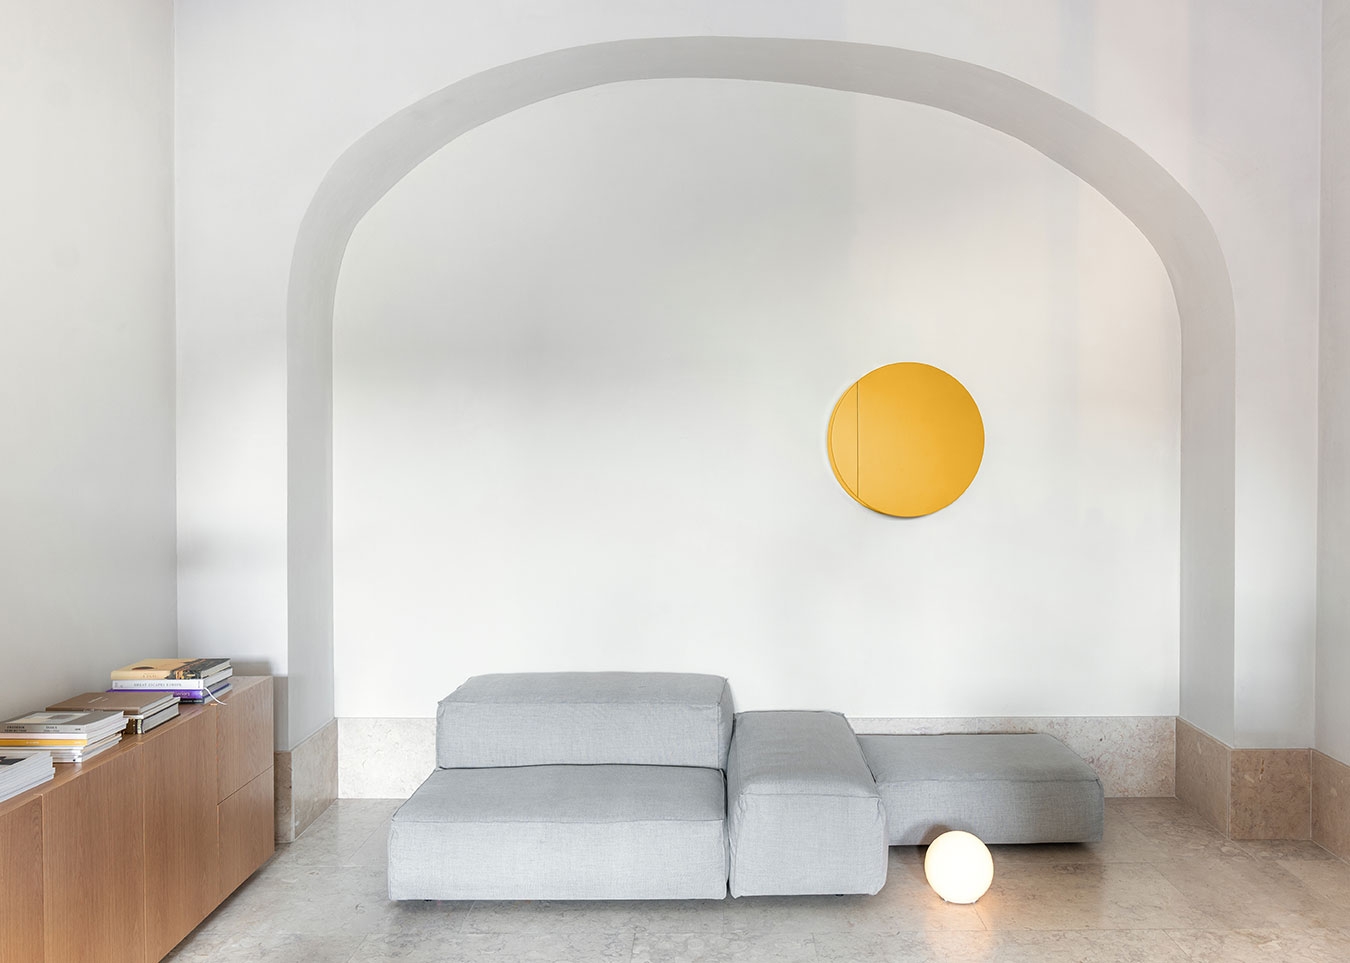 Schönbuch designer wall-mounted element wood yellow minimalist Studio Besau-Marguerre